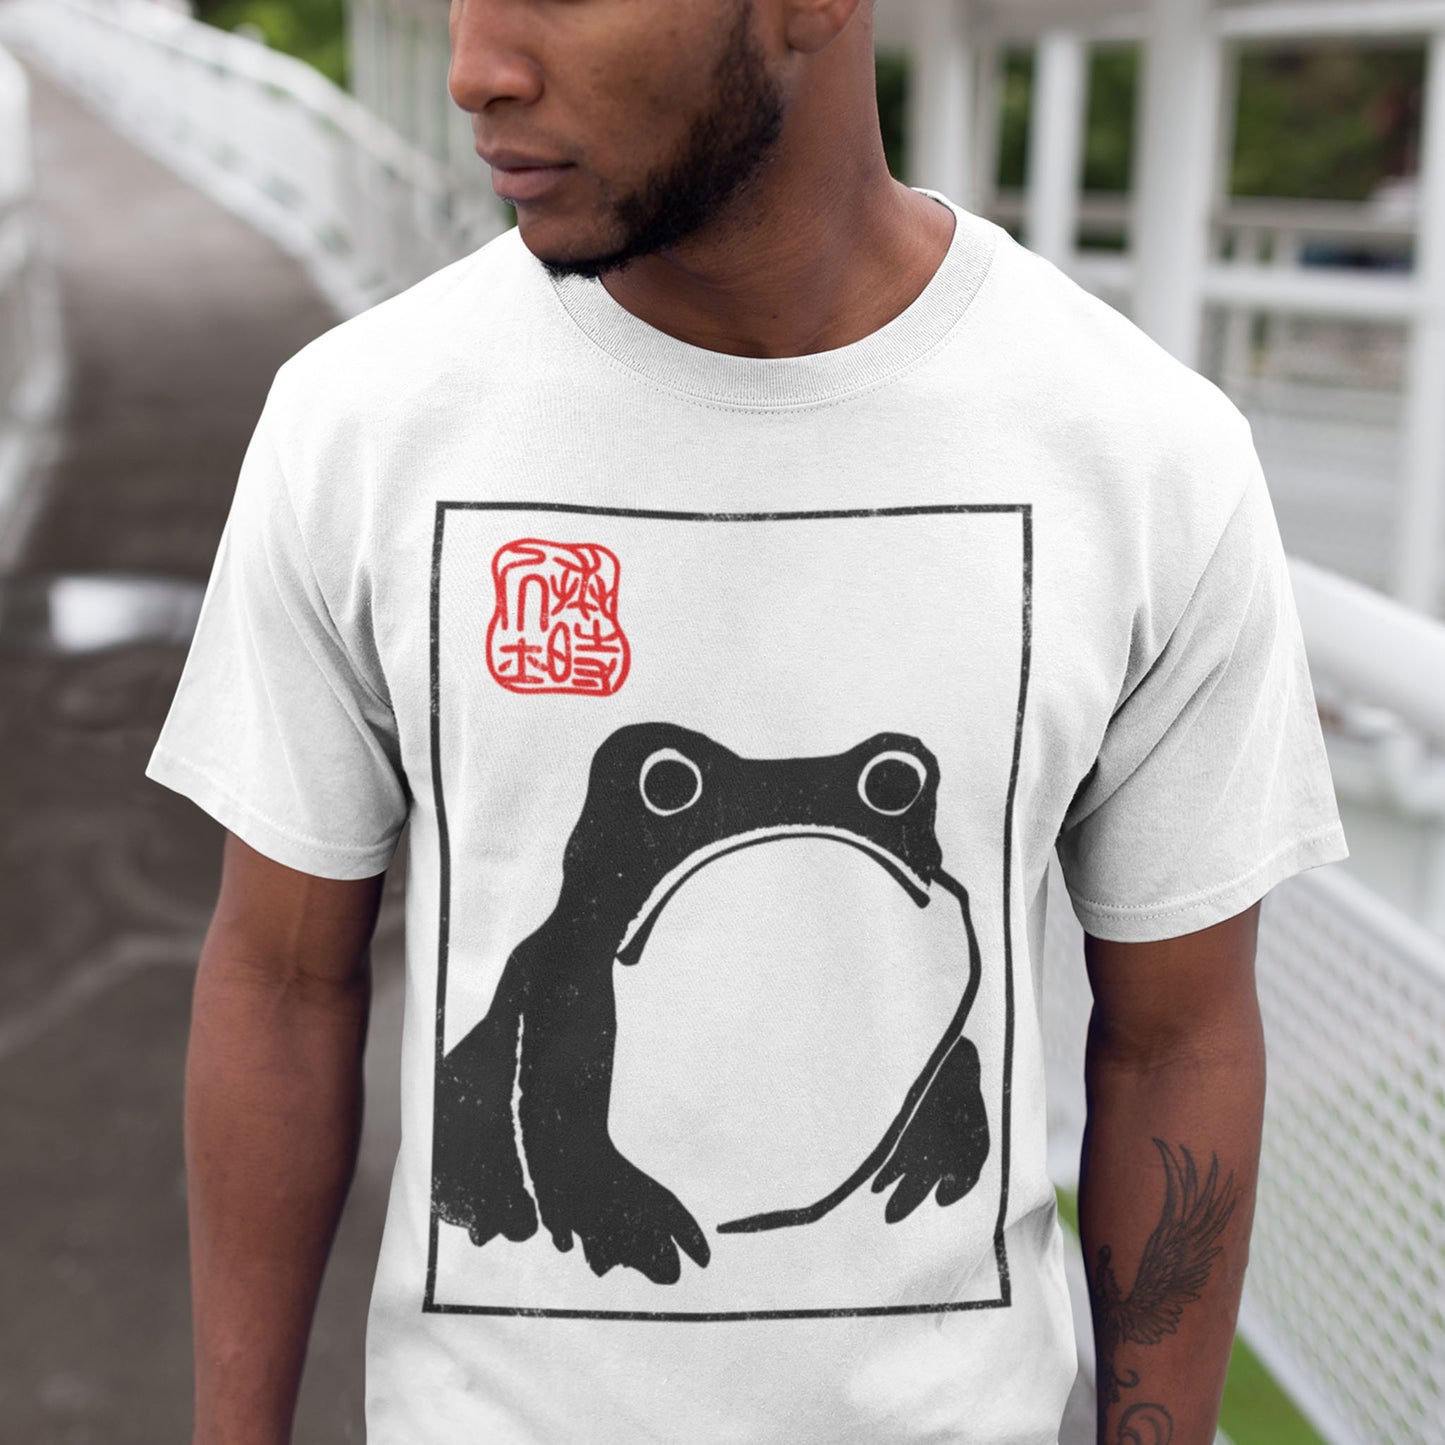 Unimpressed Frog T-Shirt